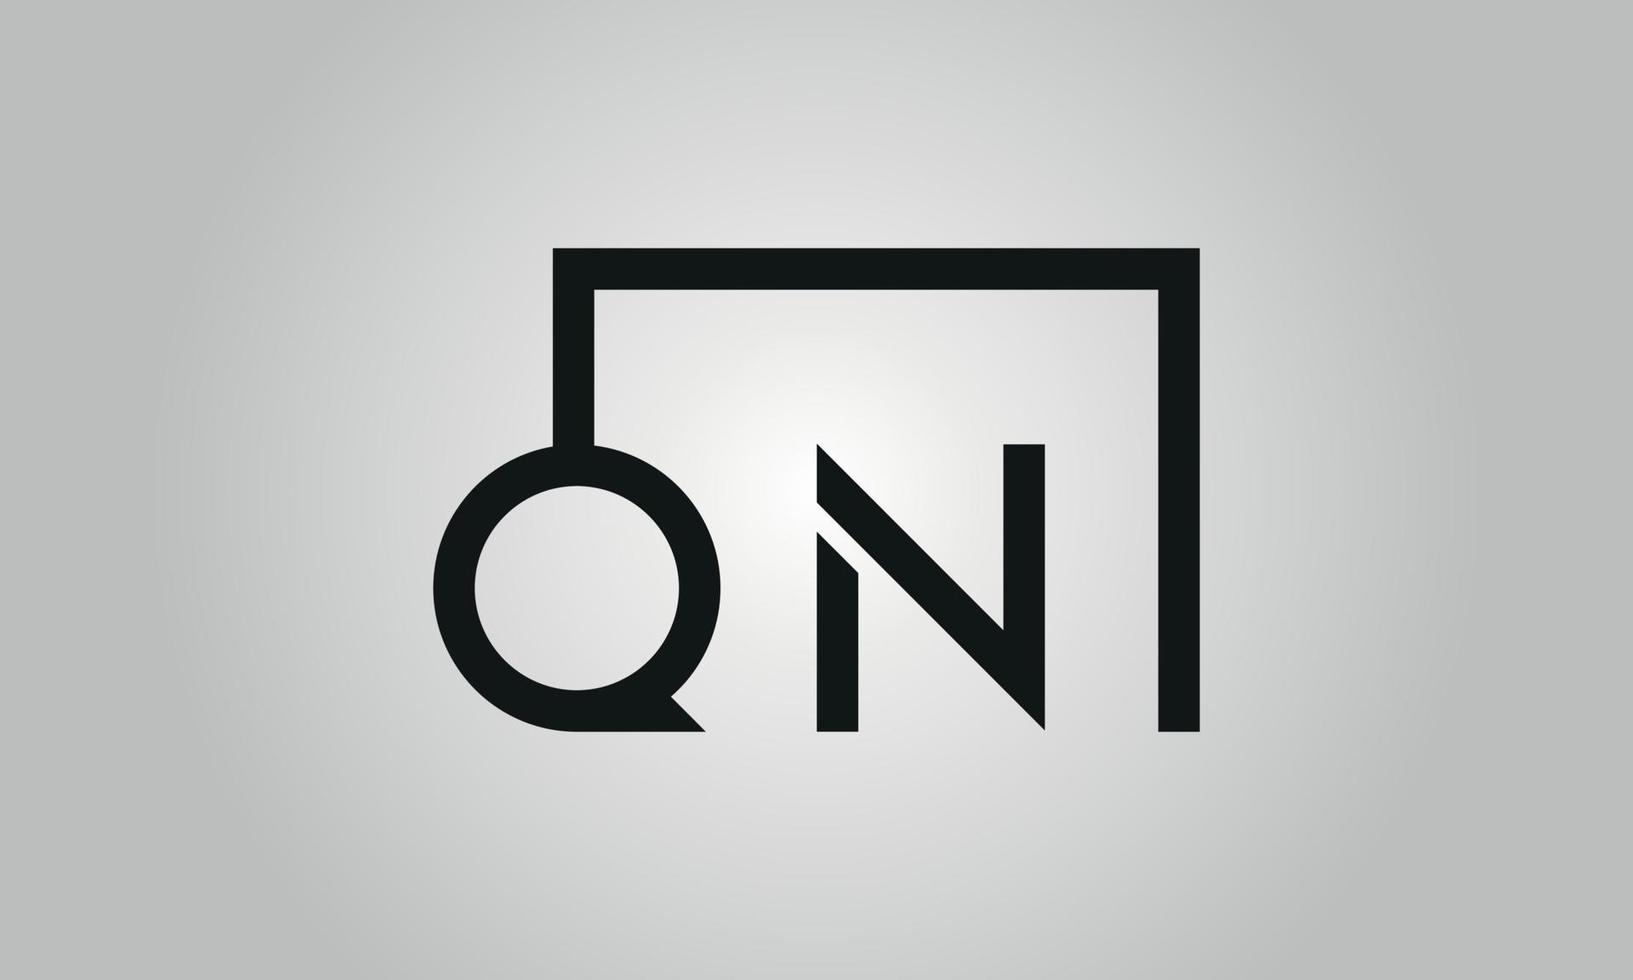 création de logo lettre qn. logo qn avec forme carrée dans le modèle vectoriel gratuit de couleurs noires.